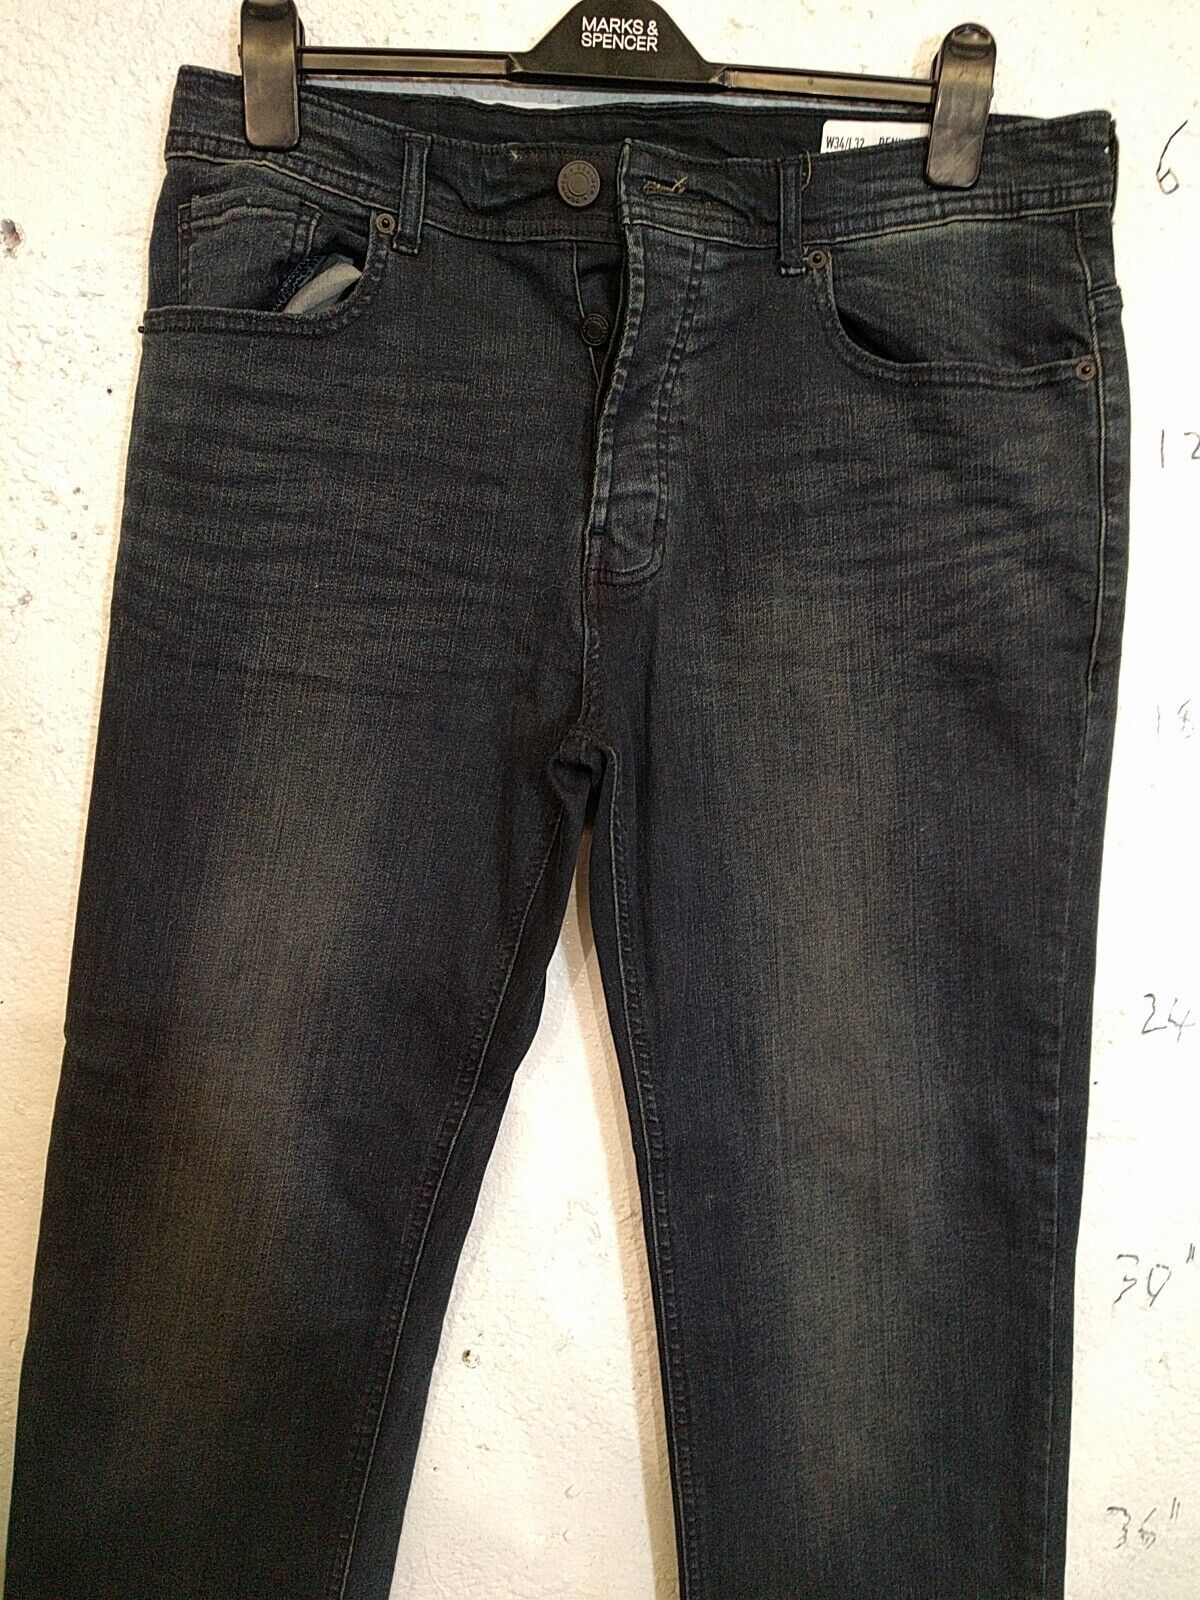 Primary image for Men Denim&co size w34/ L32 cotton blue jeans